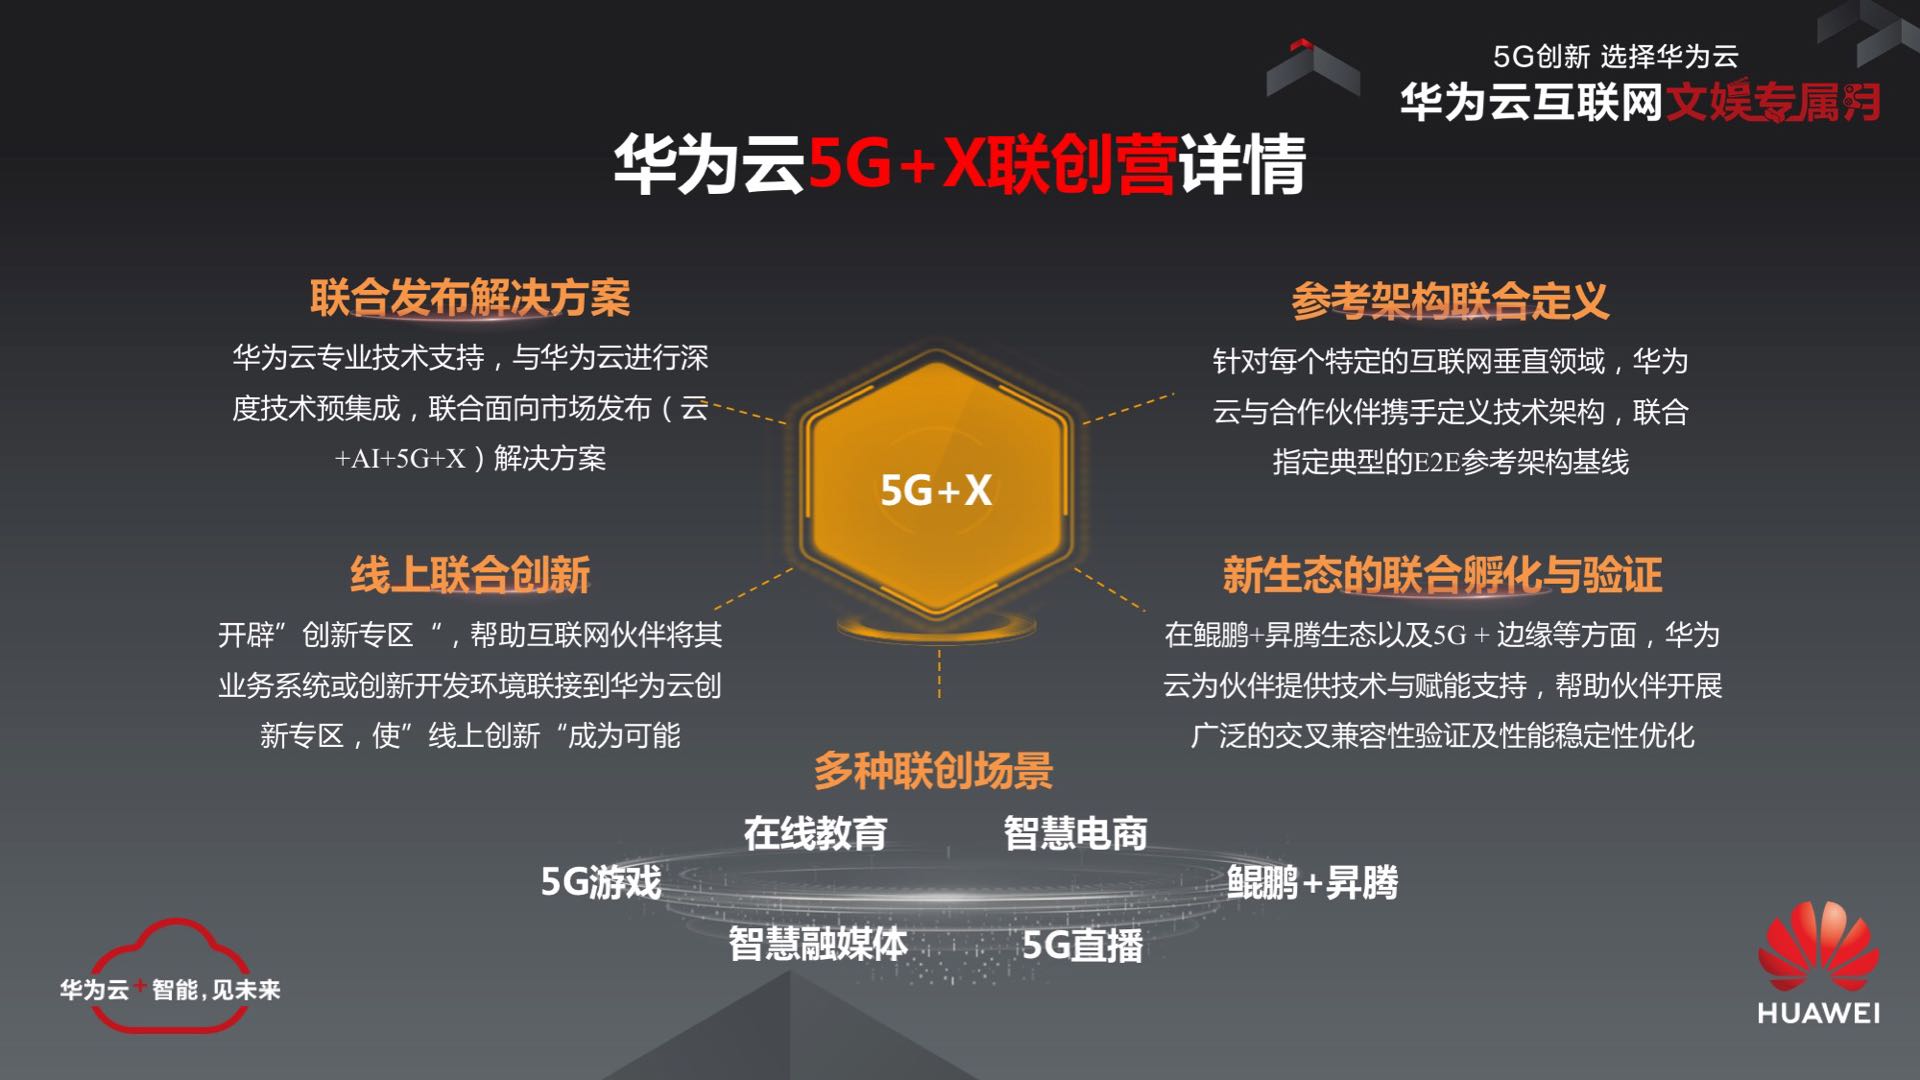 上海：5G 技术引领科技发展，改变生活方式与社交互动模式